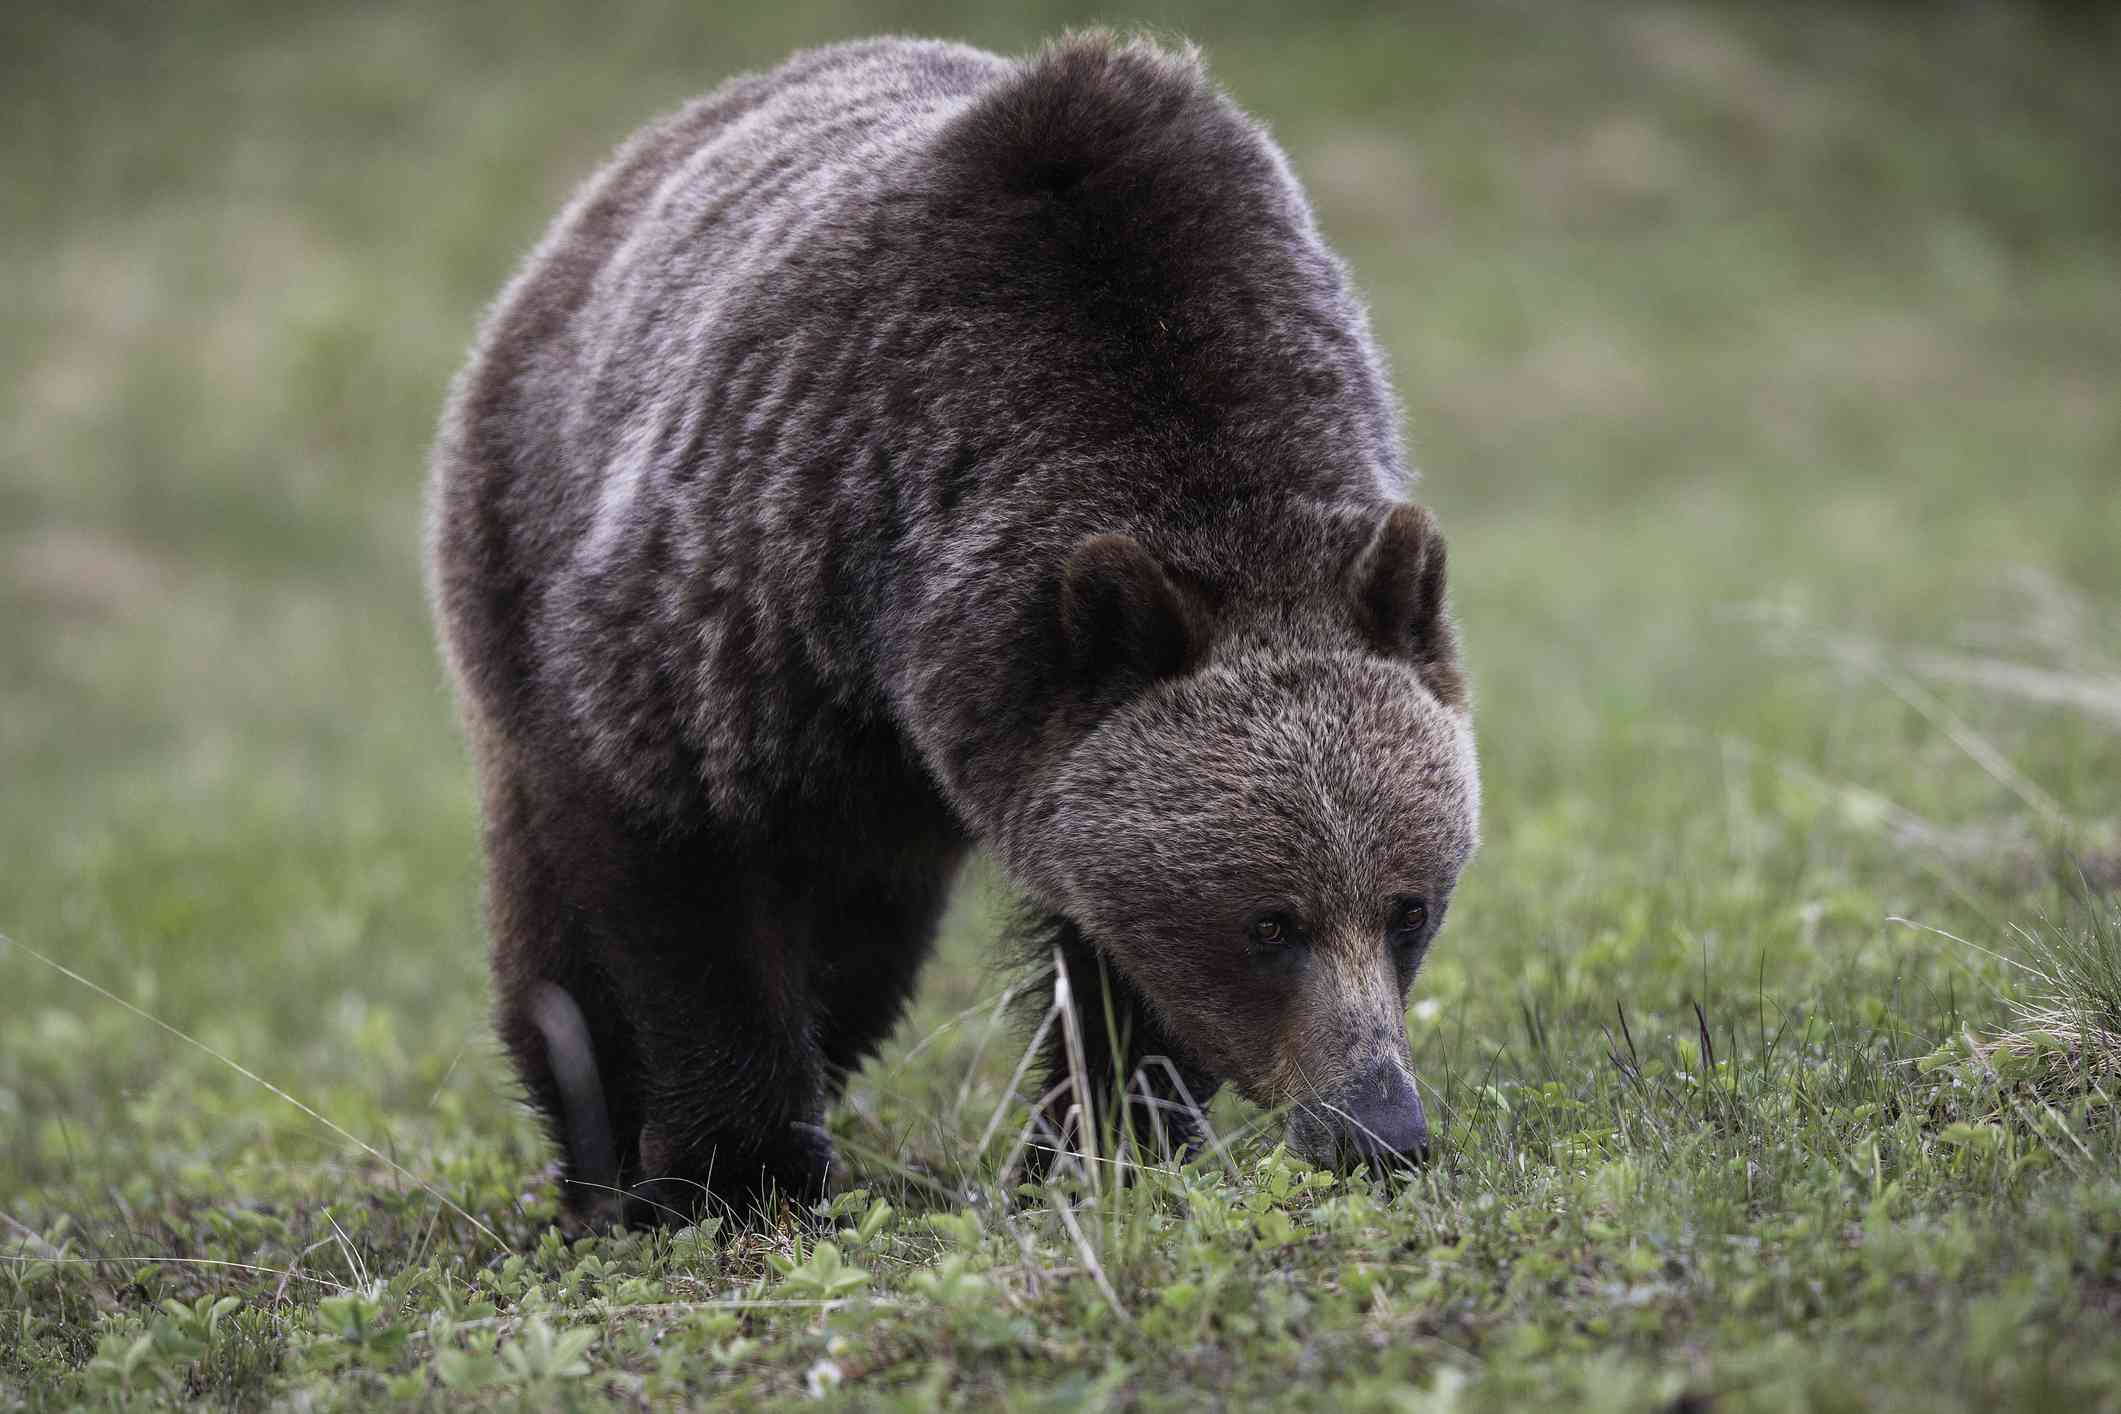 Oso grizzly con su distintiva joroba en el hombro, de pie a cuatro patas y comiendo hierba